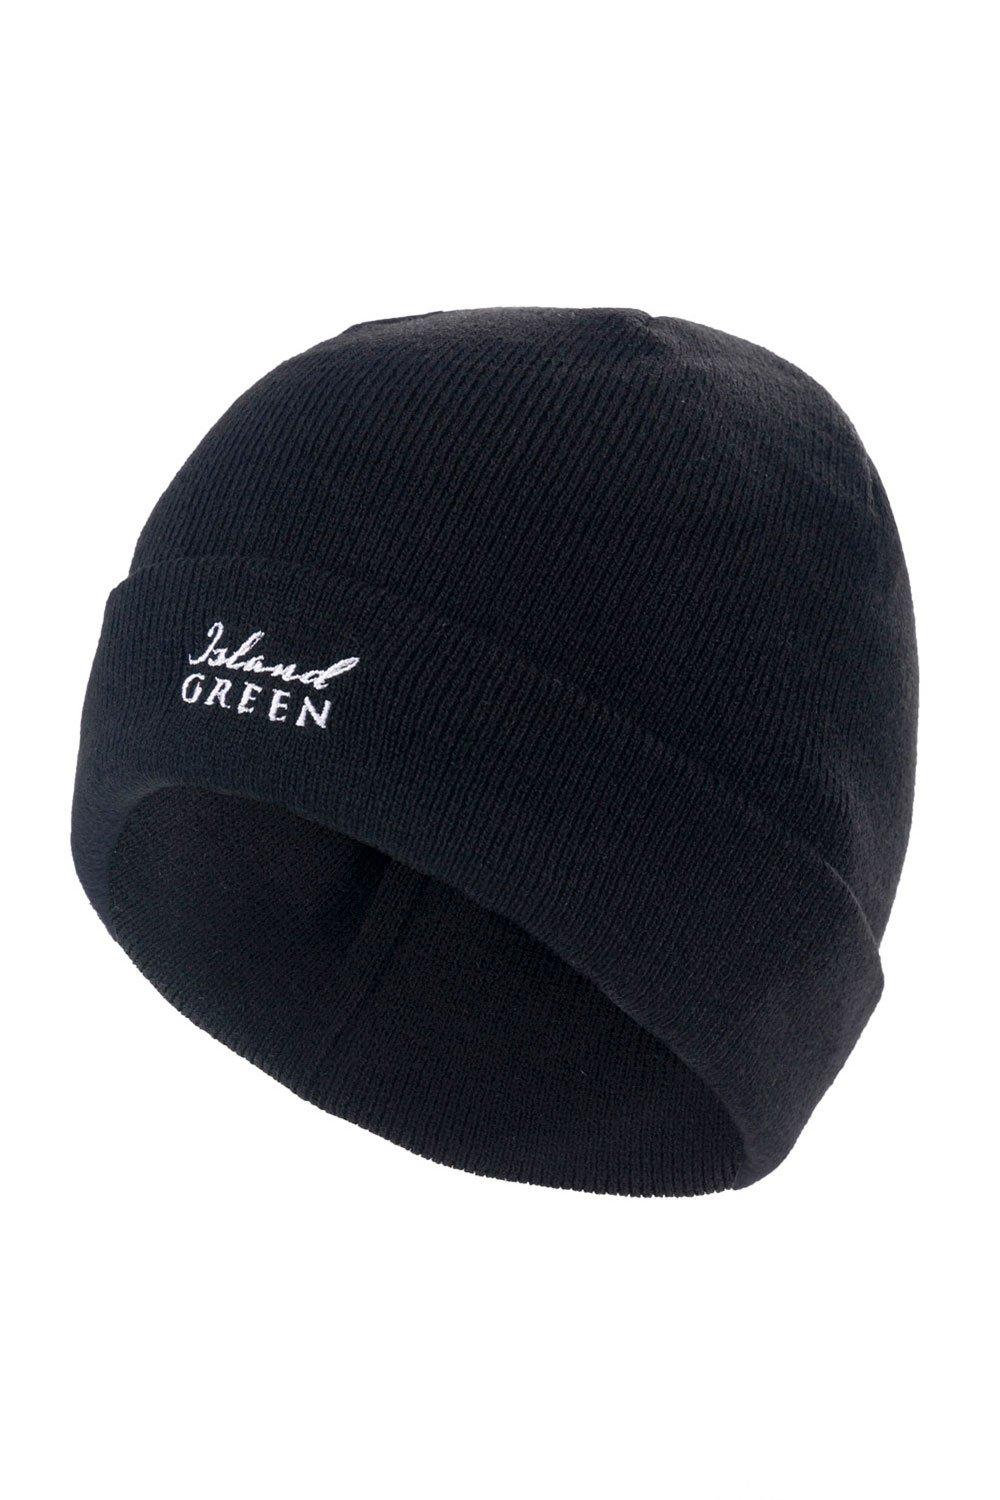 Классическая шапка-бини для гольфа Island Green, черный 2022 дизайнерская модная новая зимняя шапка сетчатая шапка для гольфа рыбацкая шапка шапка для гольфа унисекс бейсбольная шапка шапка для